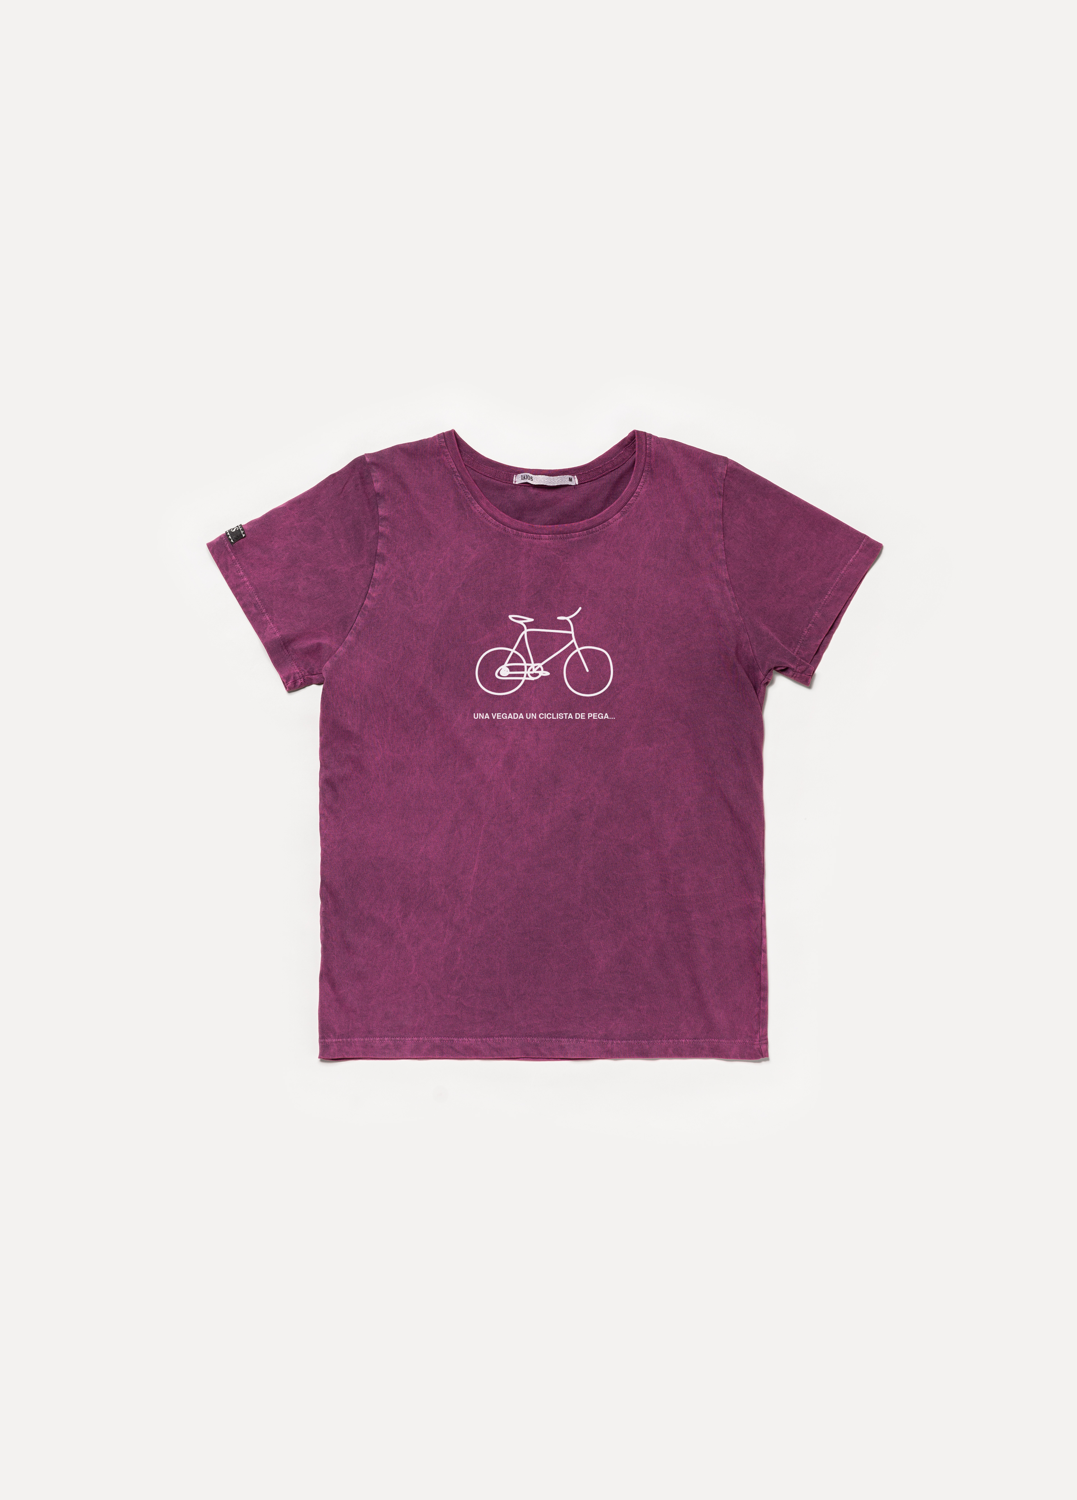 Pega Cyclist T-shirt